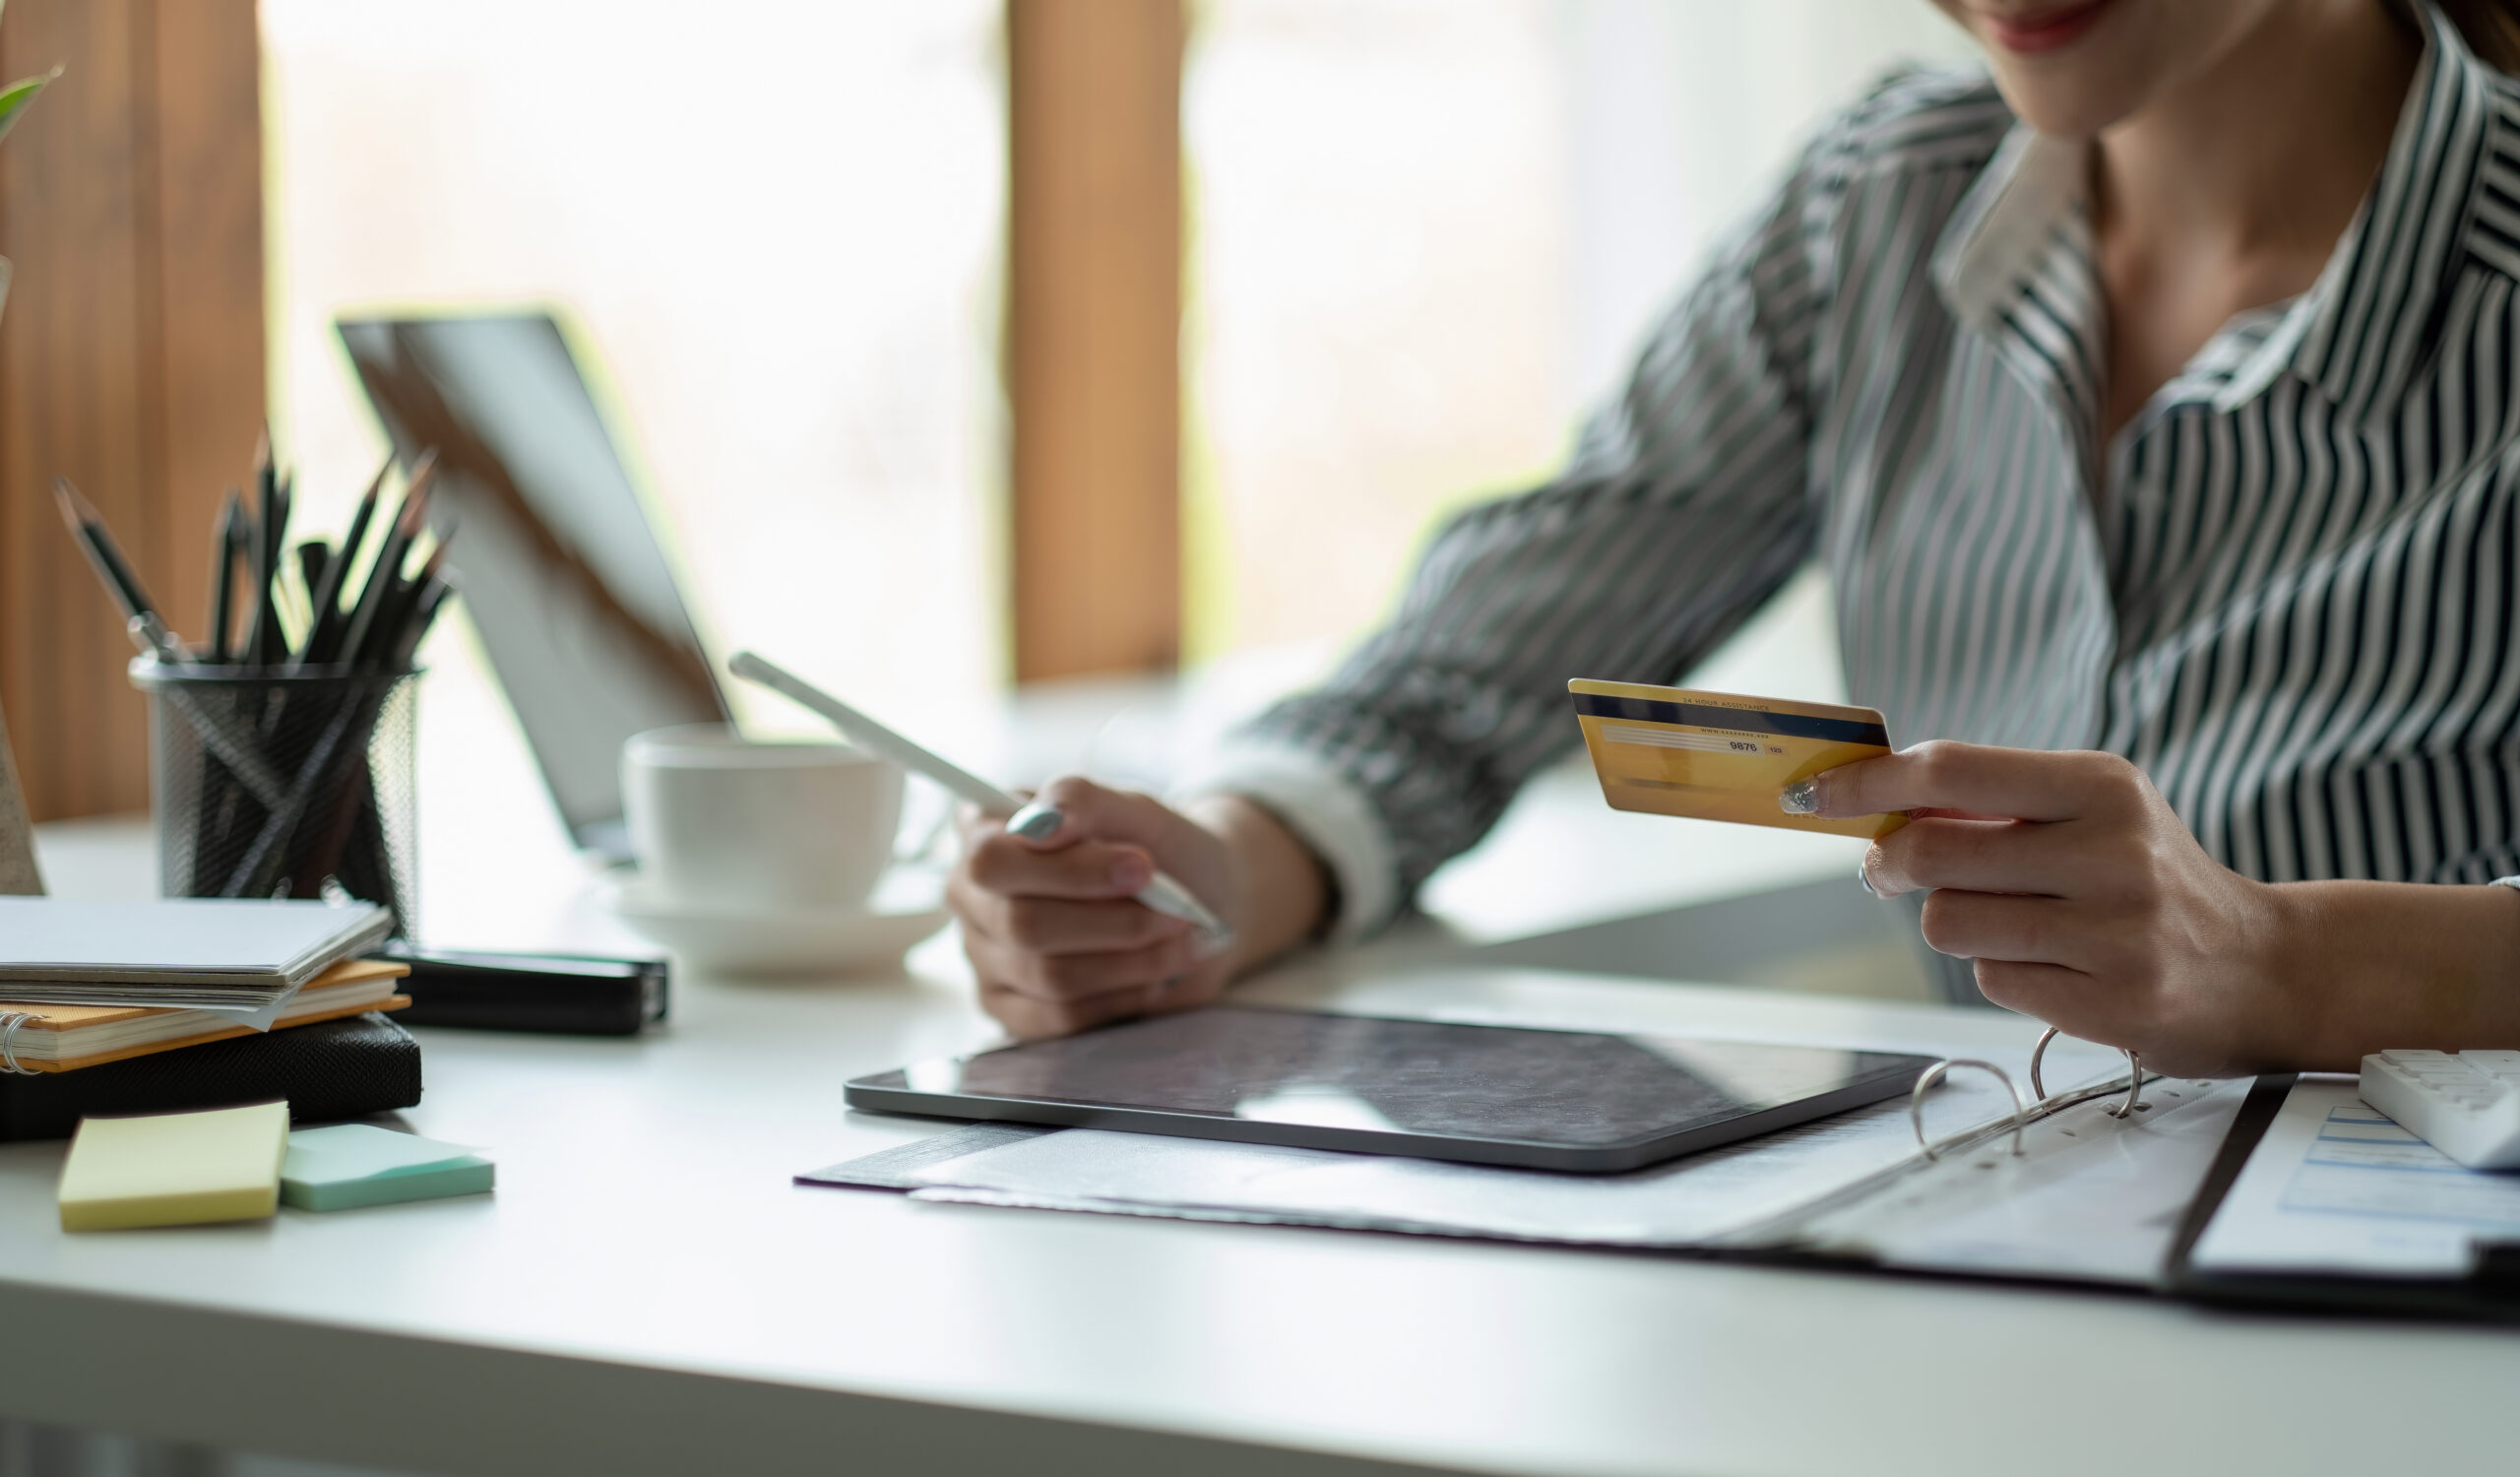 Kvinne som holder et kreditkort mens hun ser på en bunke regninger, symboliserer viktigheten av kredittscore.